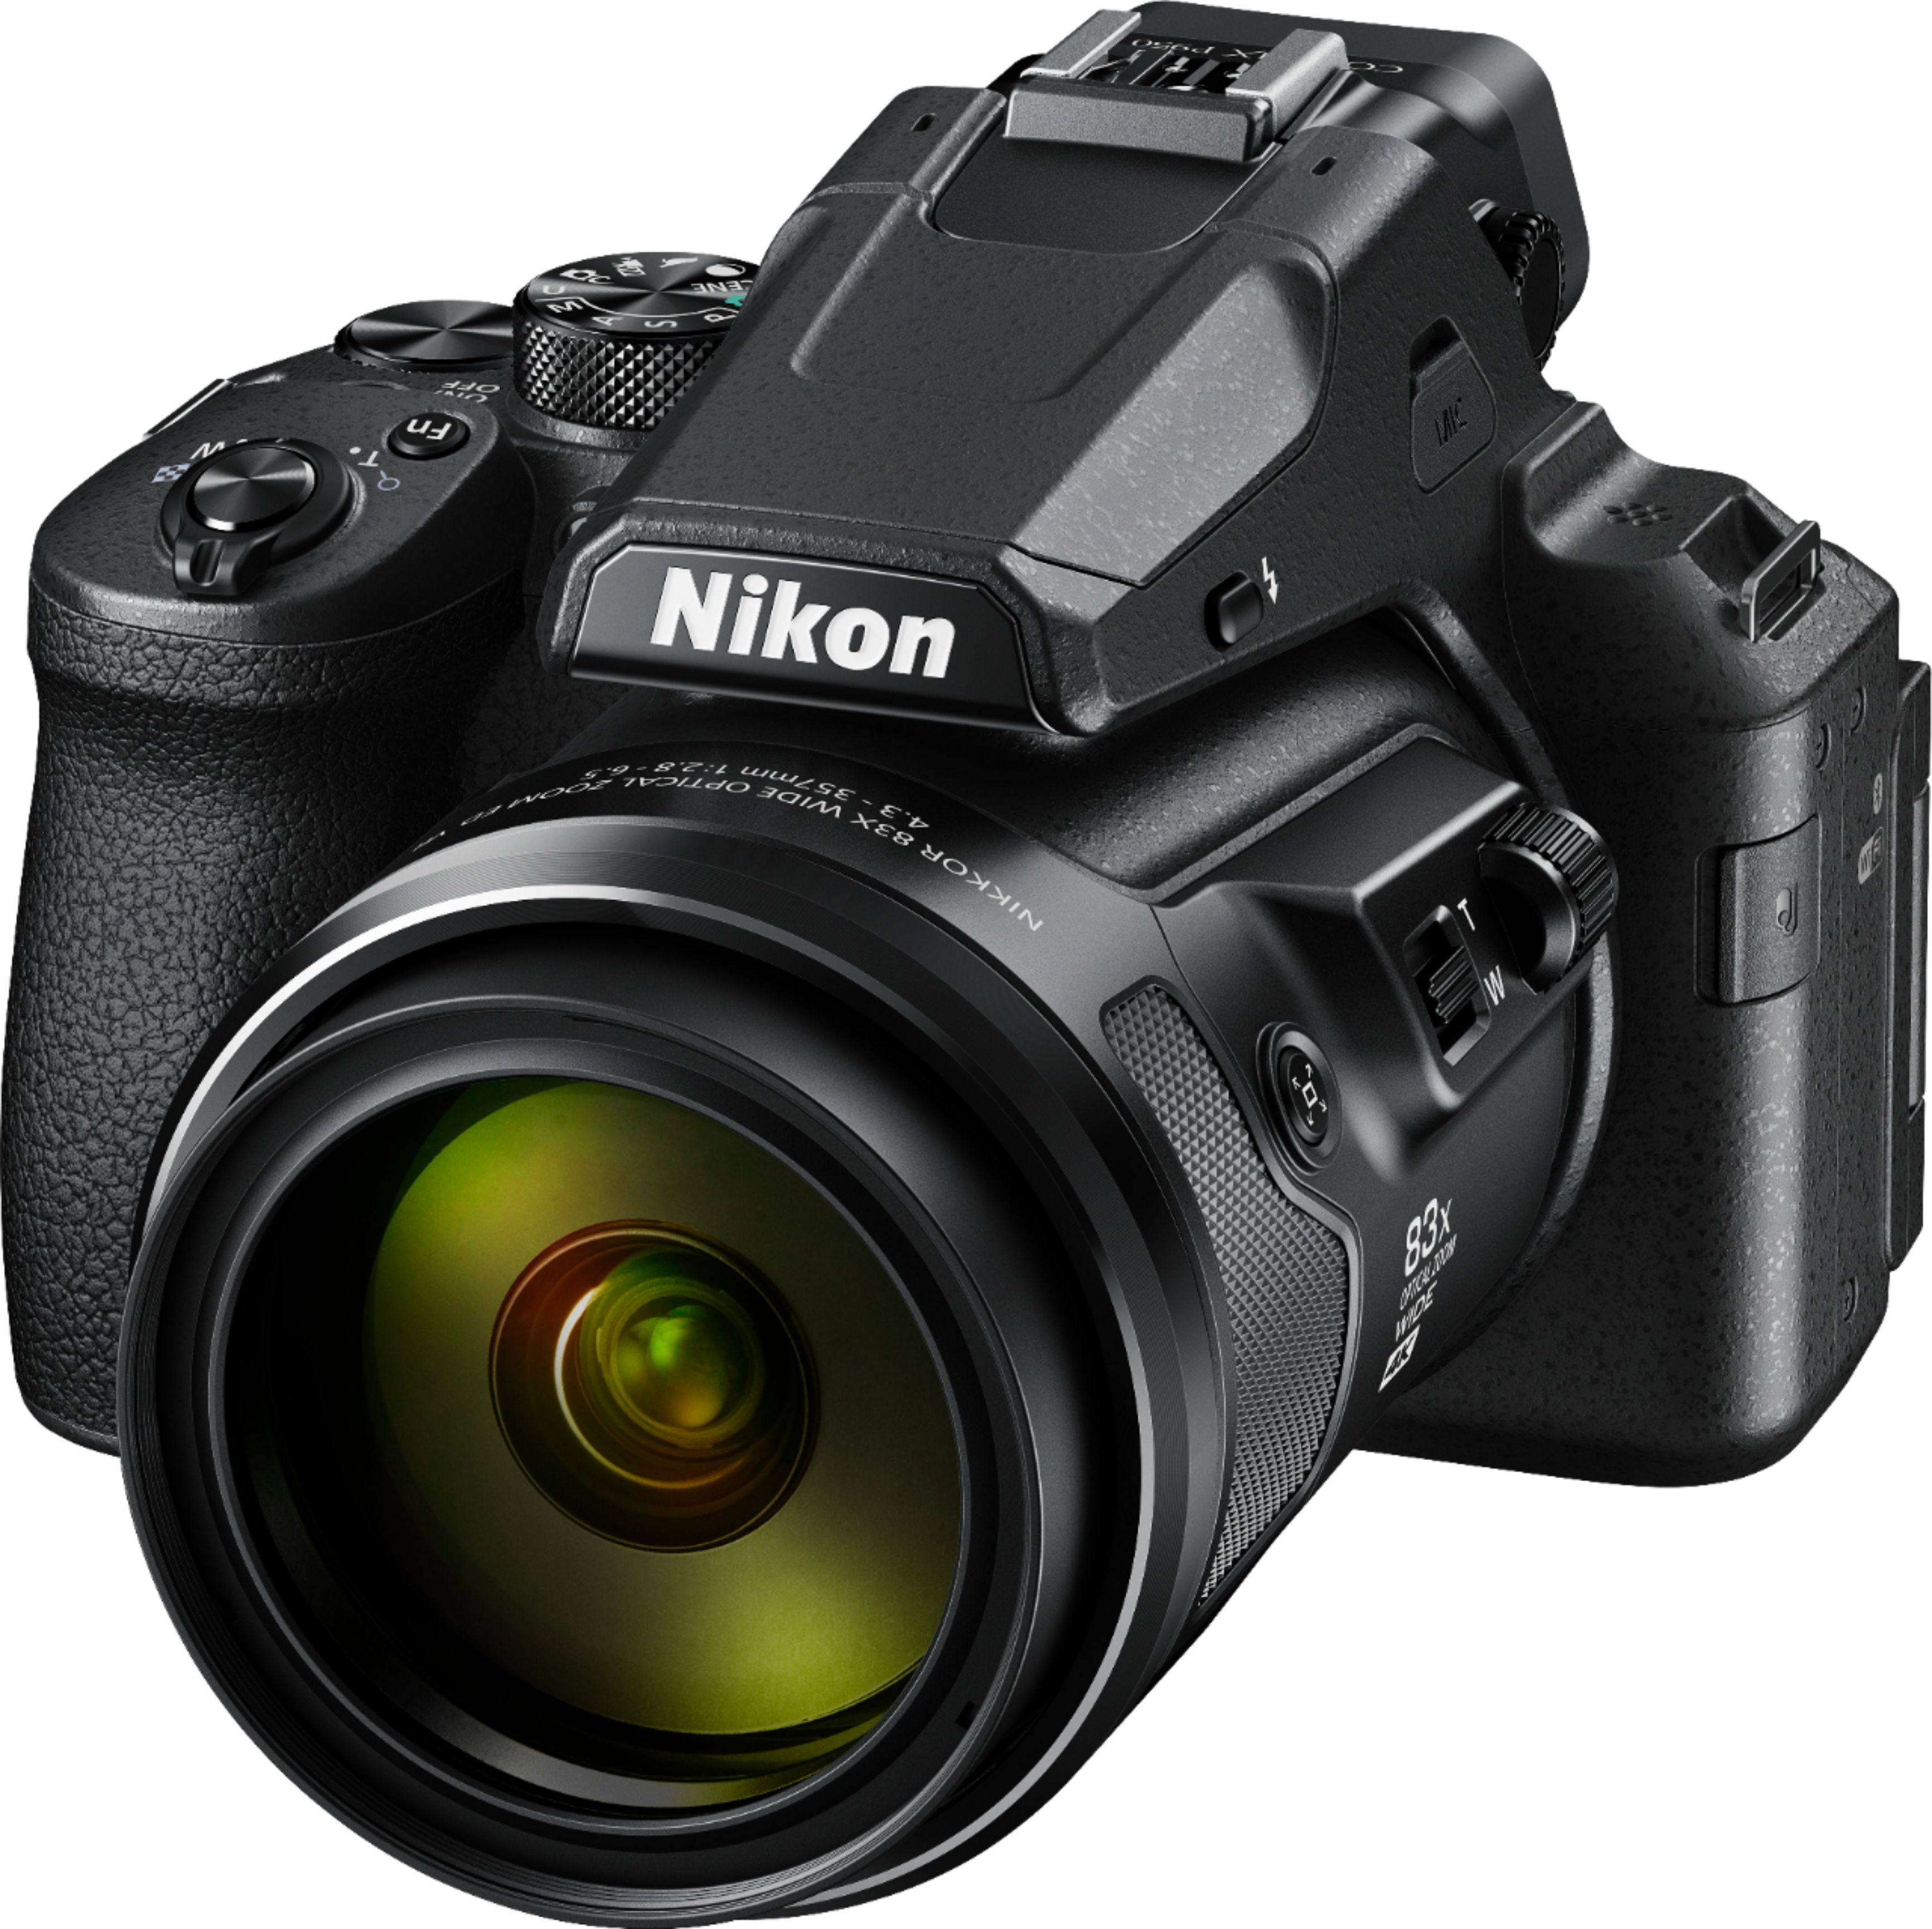 Left View: Nikon EN-EL15c Rechargeable Lithium-Ion Battery